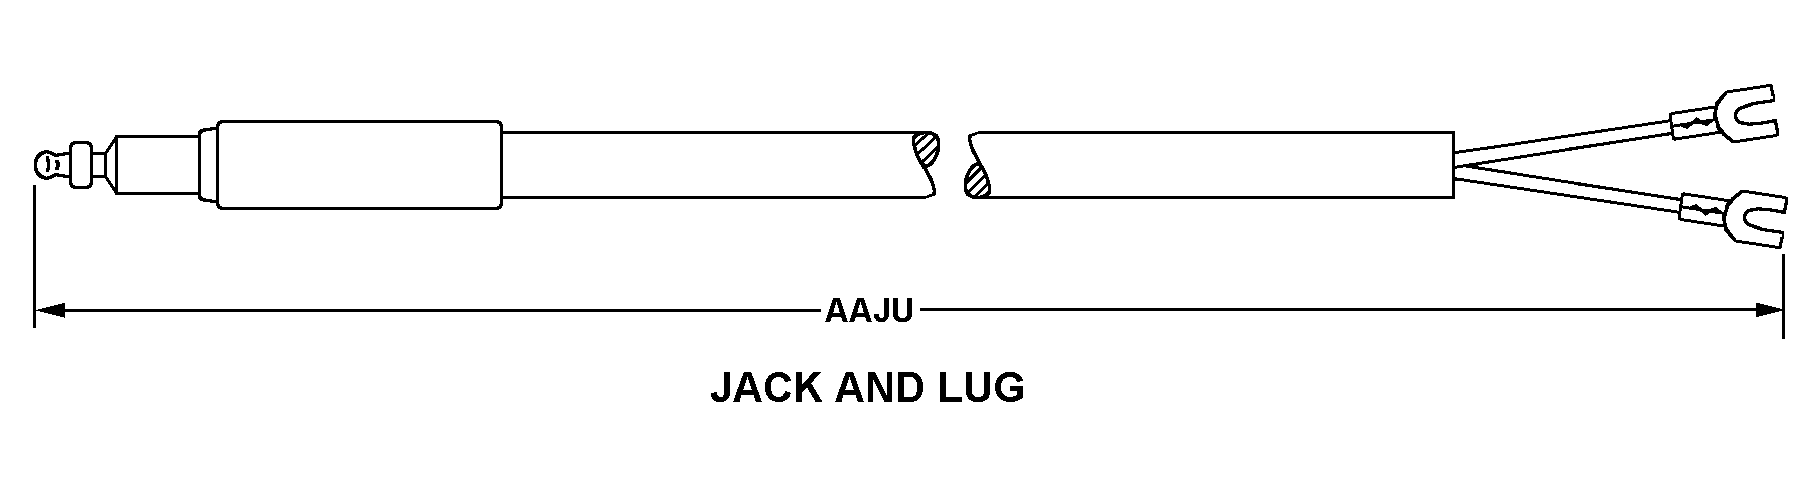 JACK AND LUG style nsn 5995-01-264-1269